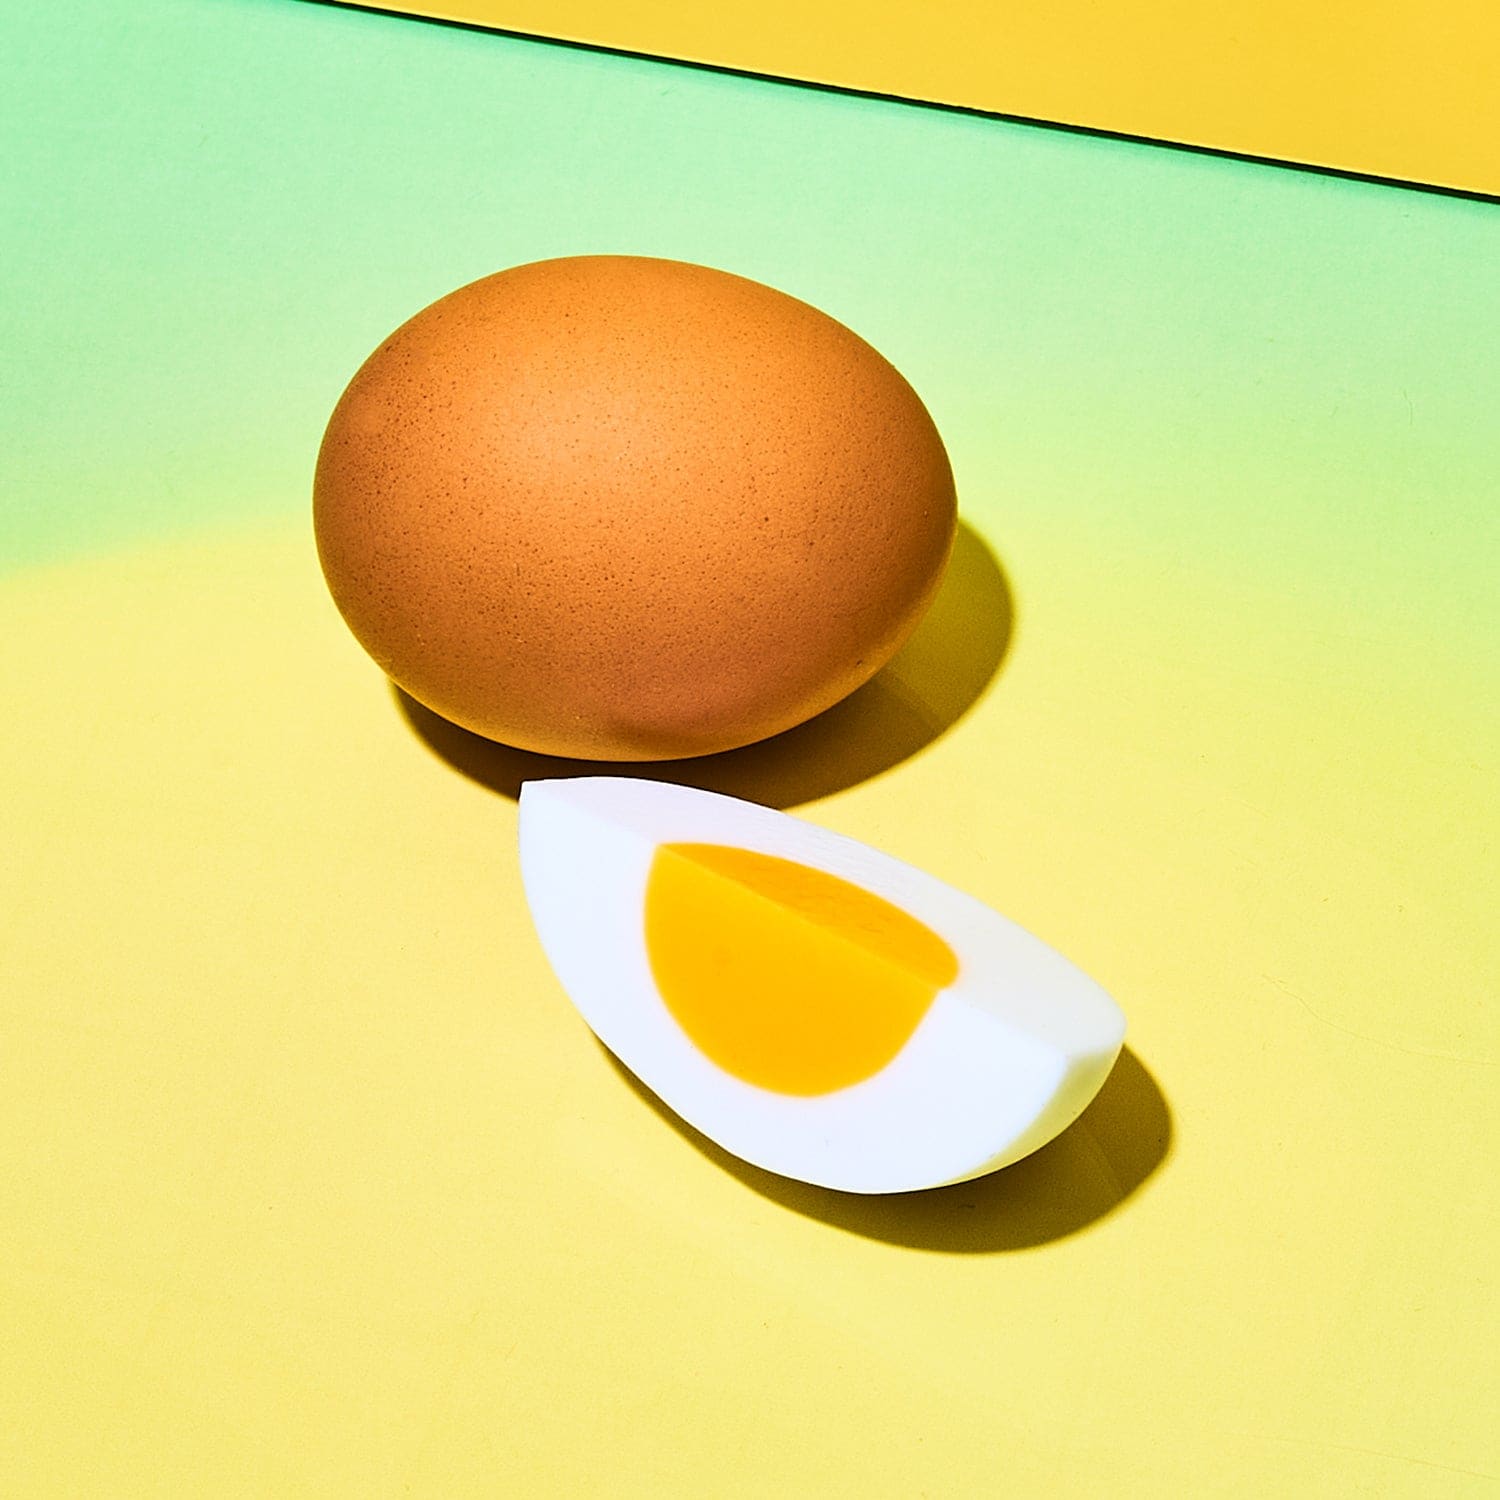 Egg Quarter Food Magnet Accessory - Egg Magnet - Food